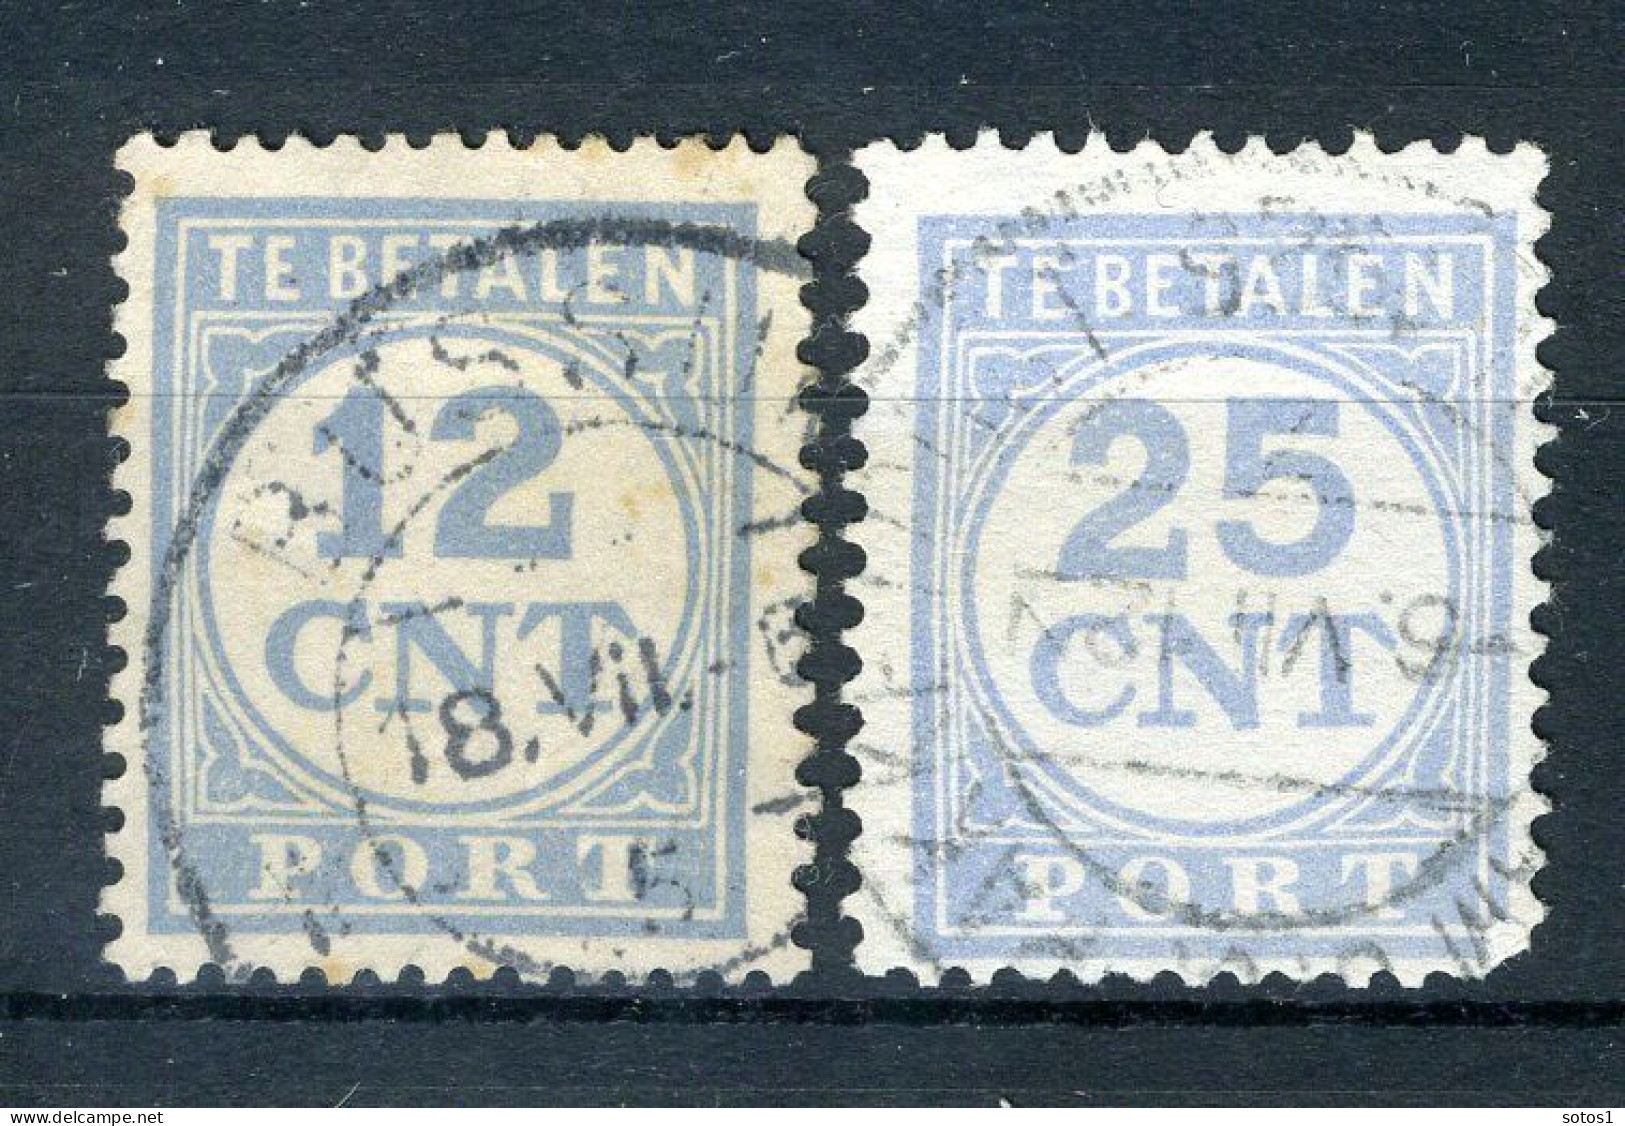 NEDERLAND P76/77 Gestempeld 1921-1938 - Cijfer En Waarde In Blauw -1 - Postage Due